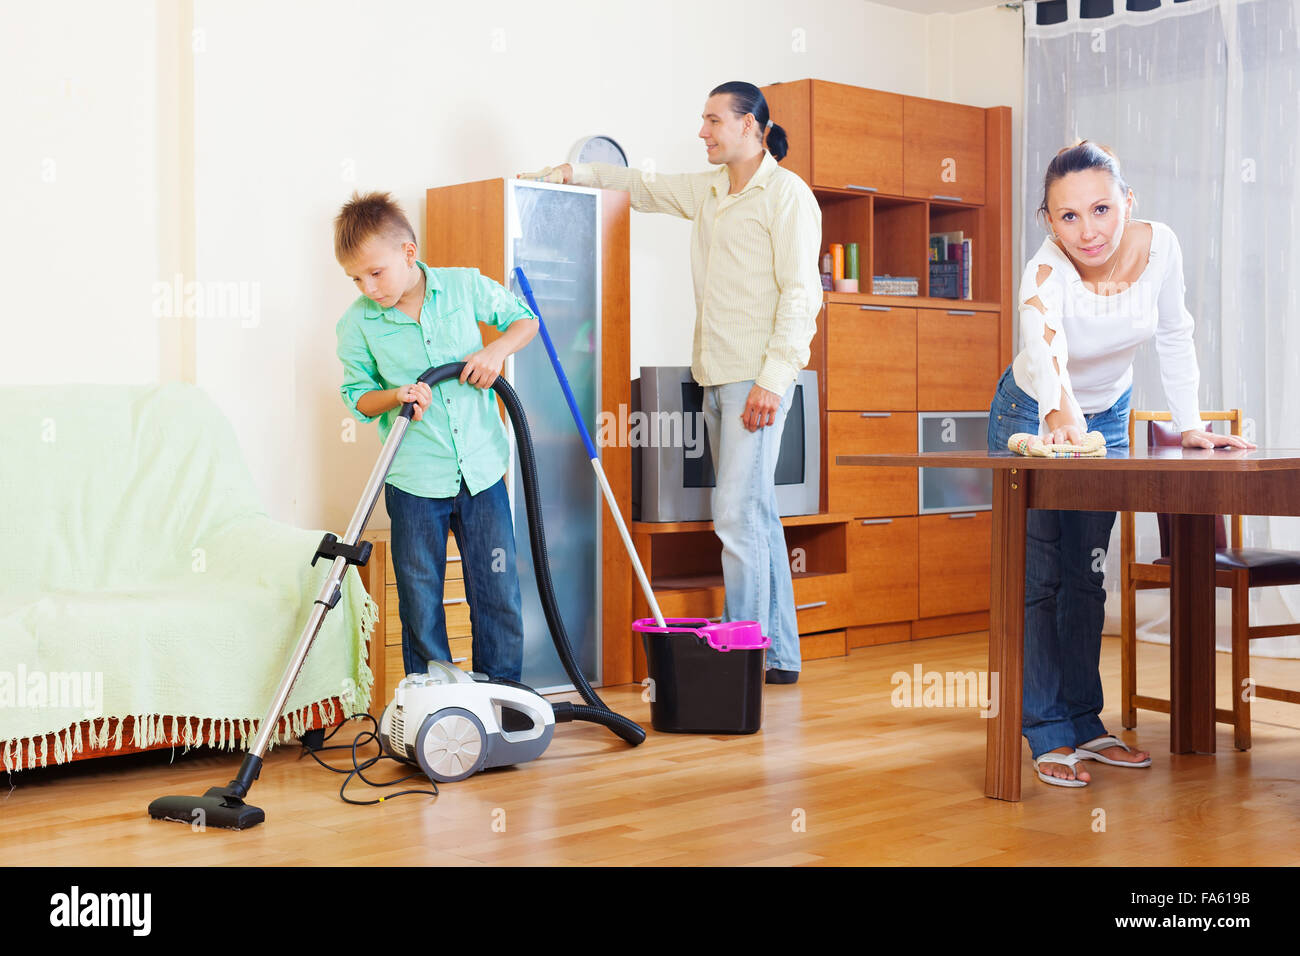 Мама помогла сыну убрать. Семья убирается. Уборка квартиры всей семьей. Уборка в детской комнате. Семья убирается в комнате.